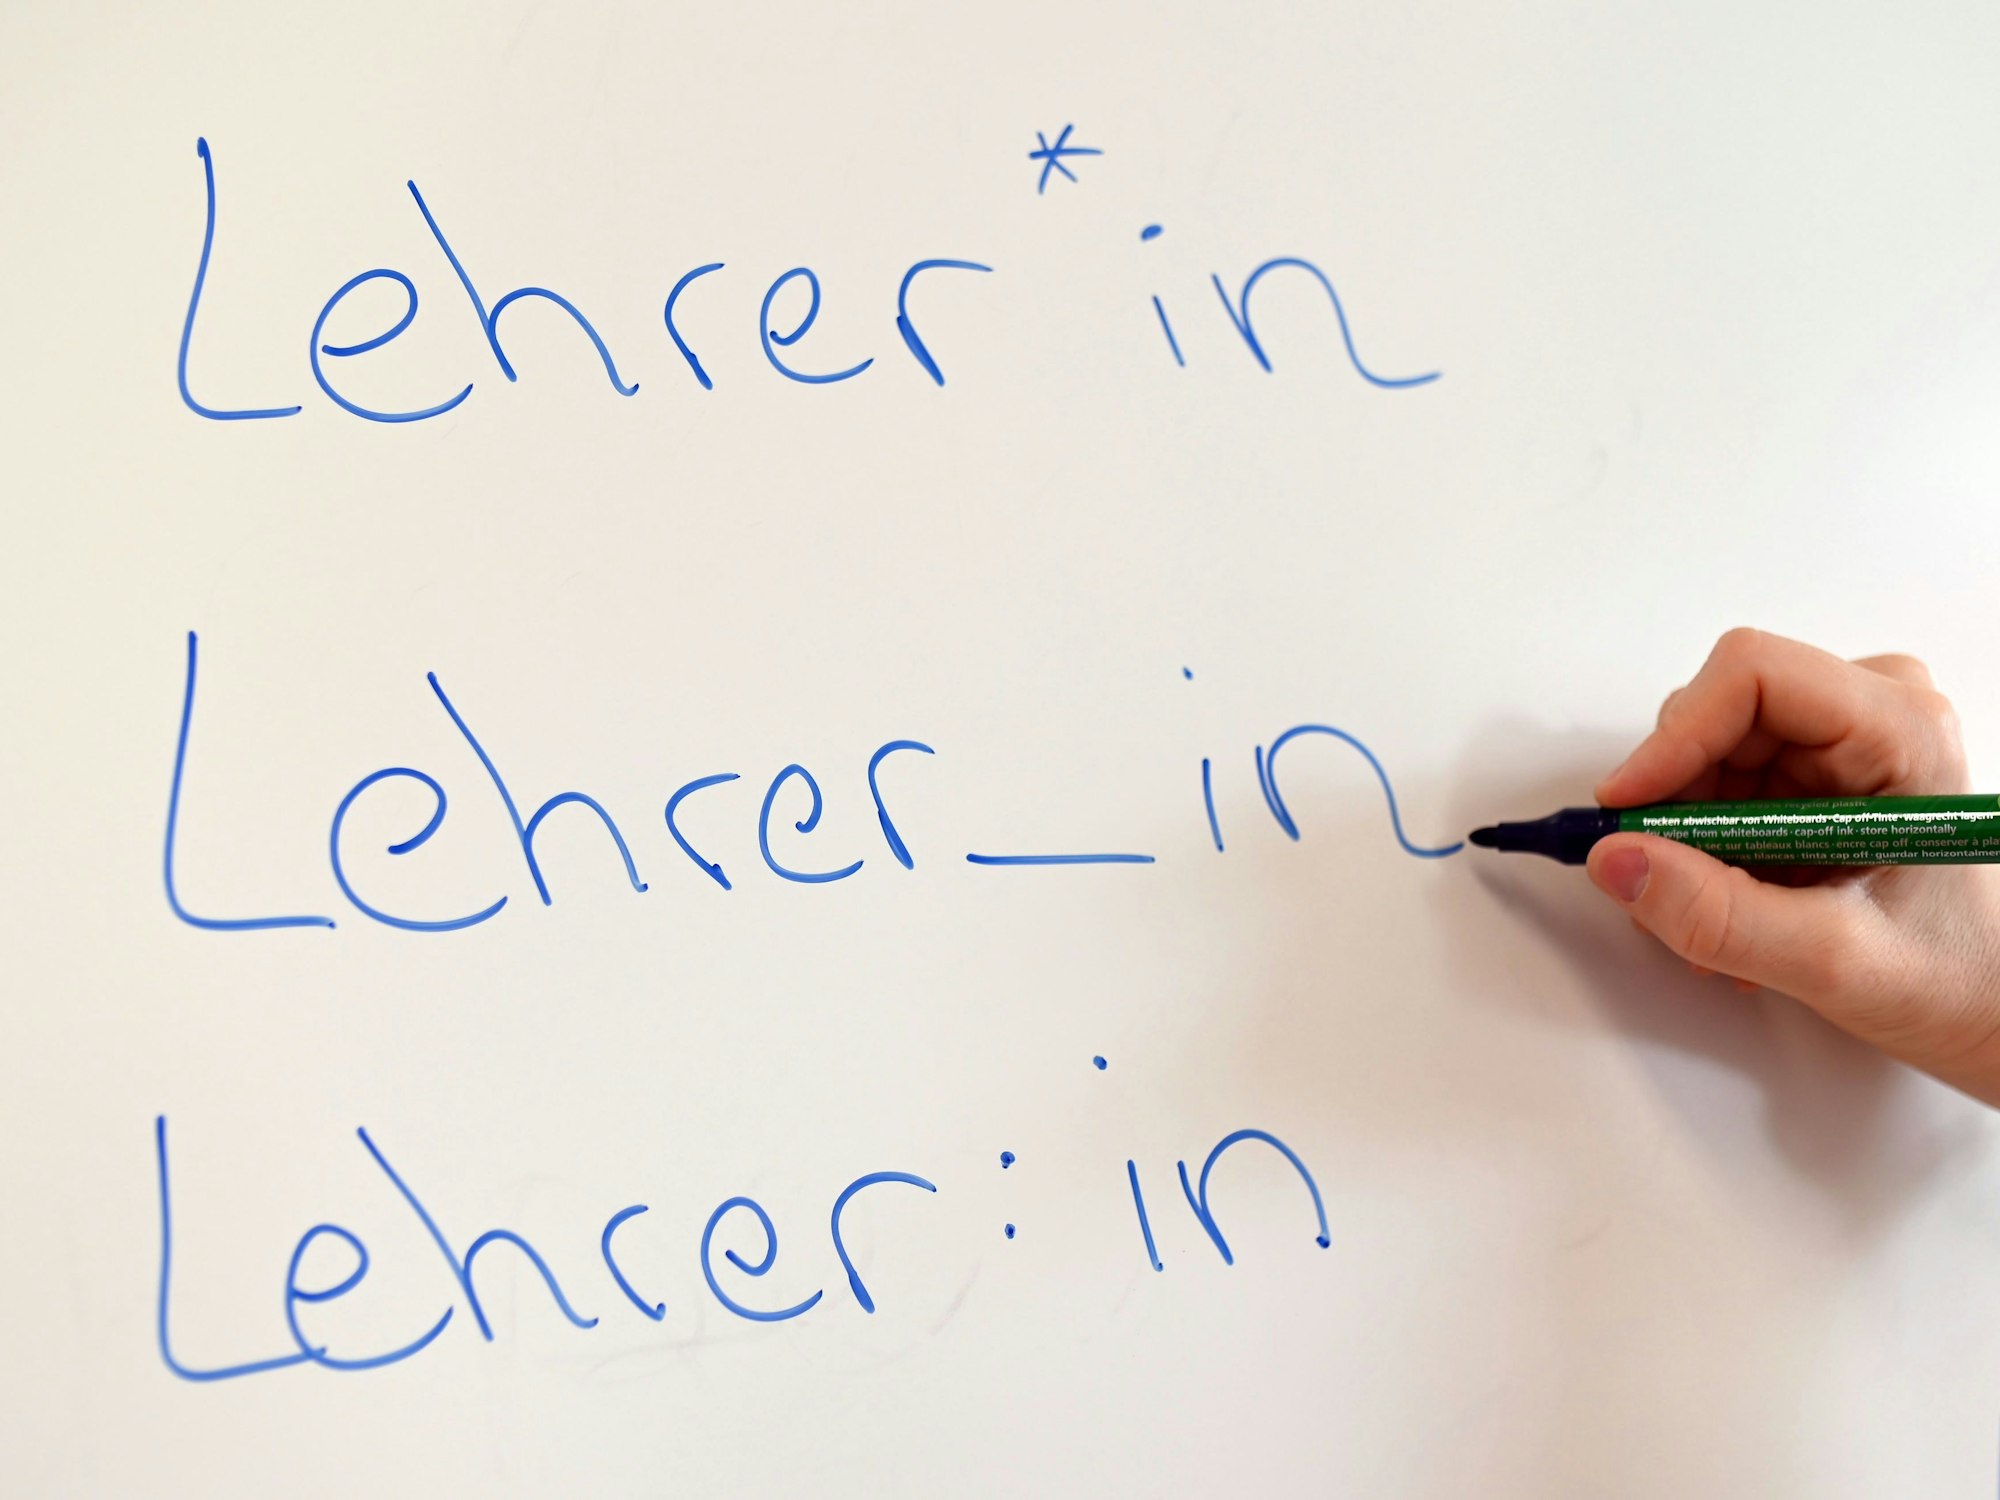 An einem Whiteboard steht das Wort „Lehrer“ in drei verschiedenen Gender-Schreibweisen.